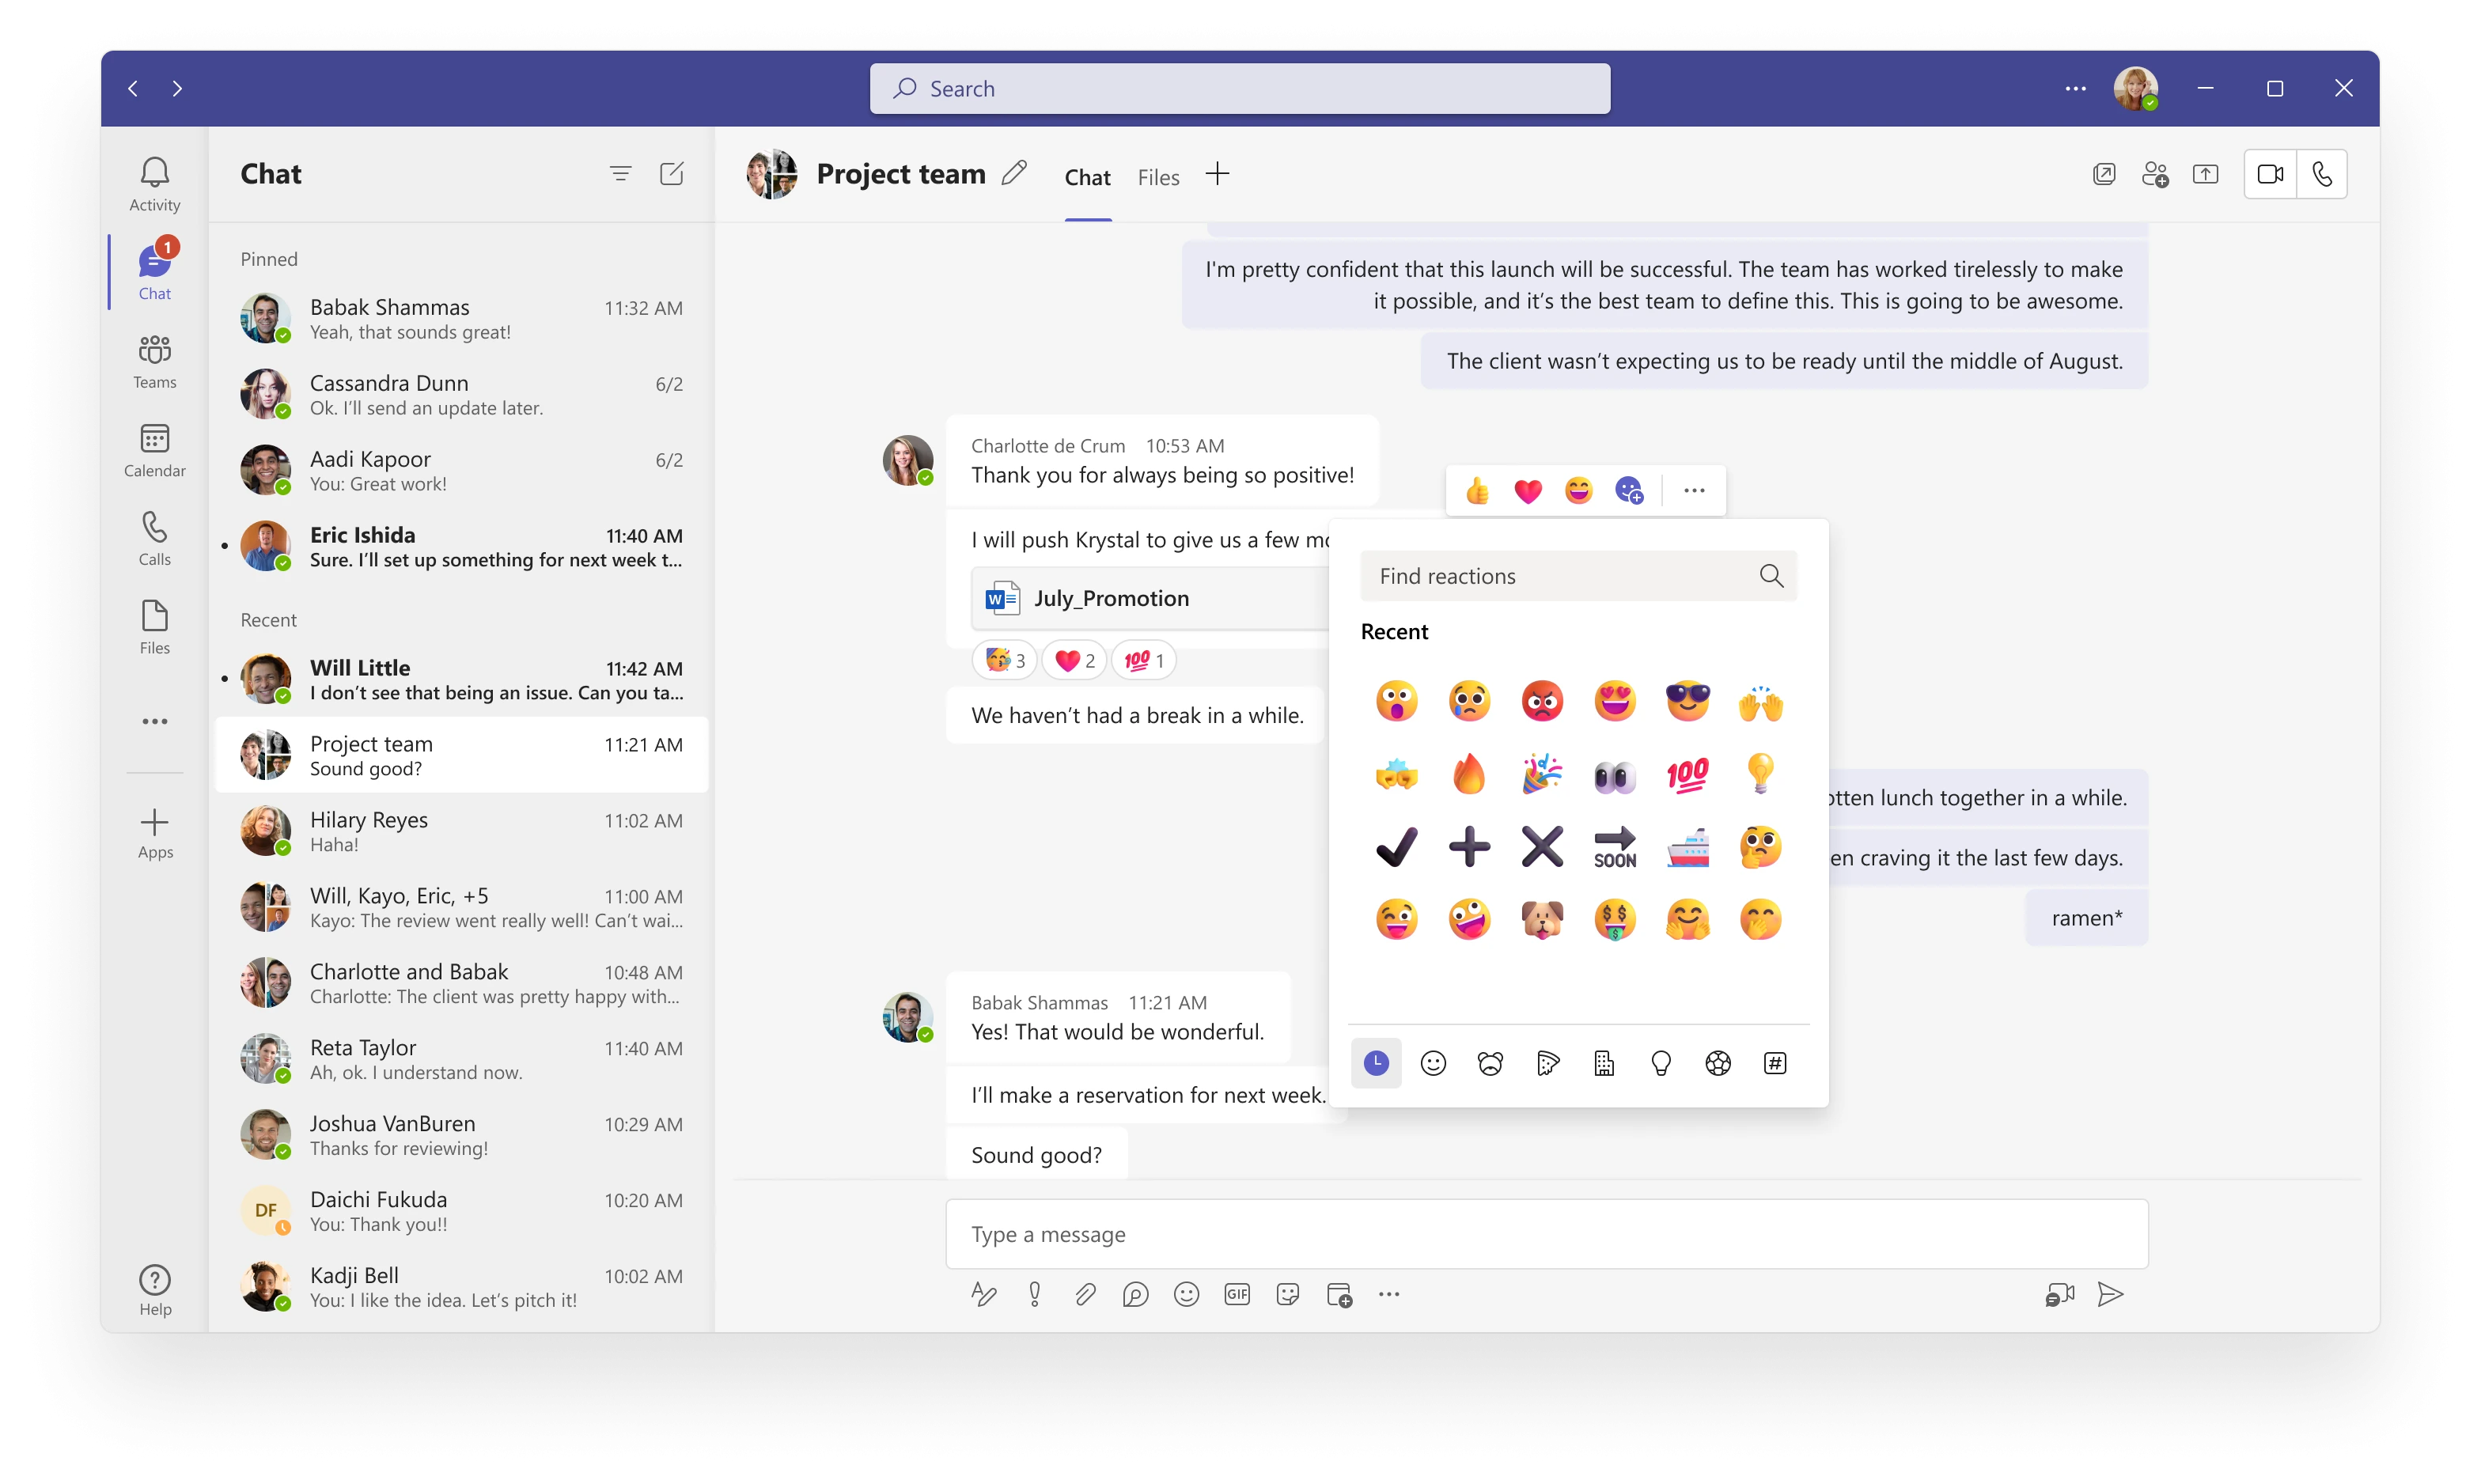 Le nuove funzionalità di chat di Teams includono 800 reazioni con emoji che consentono a tutti di esprimersi in modo naturale e autentico.